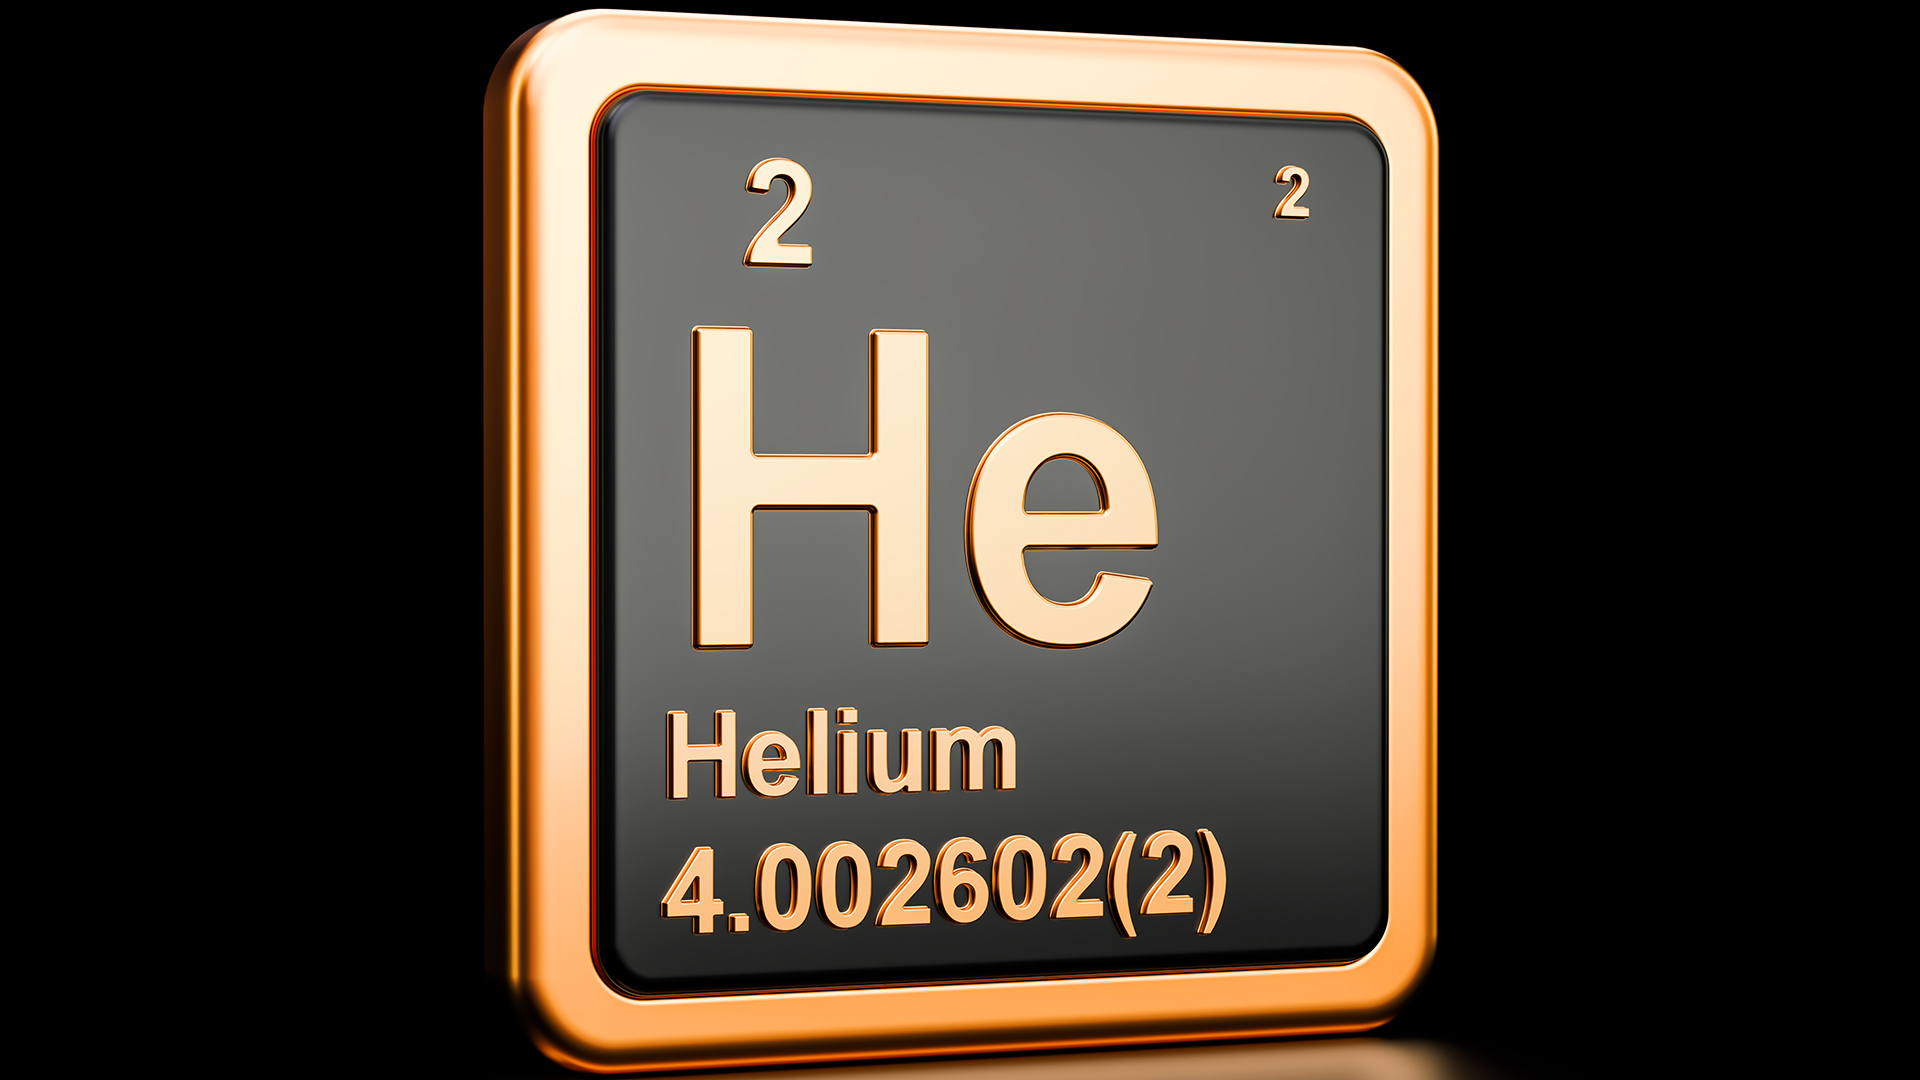 فروش گاز هلیوم (helium) در رشت و گیلان